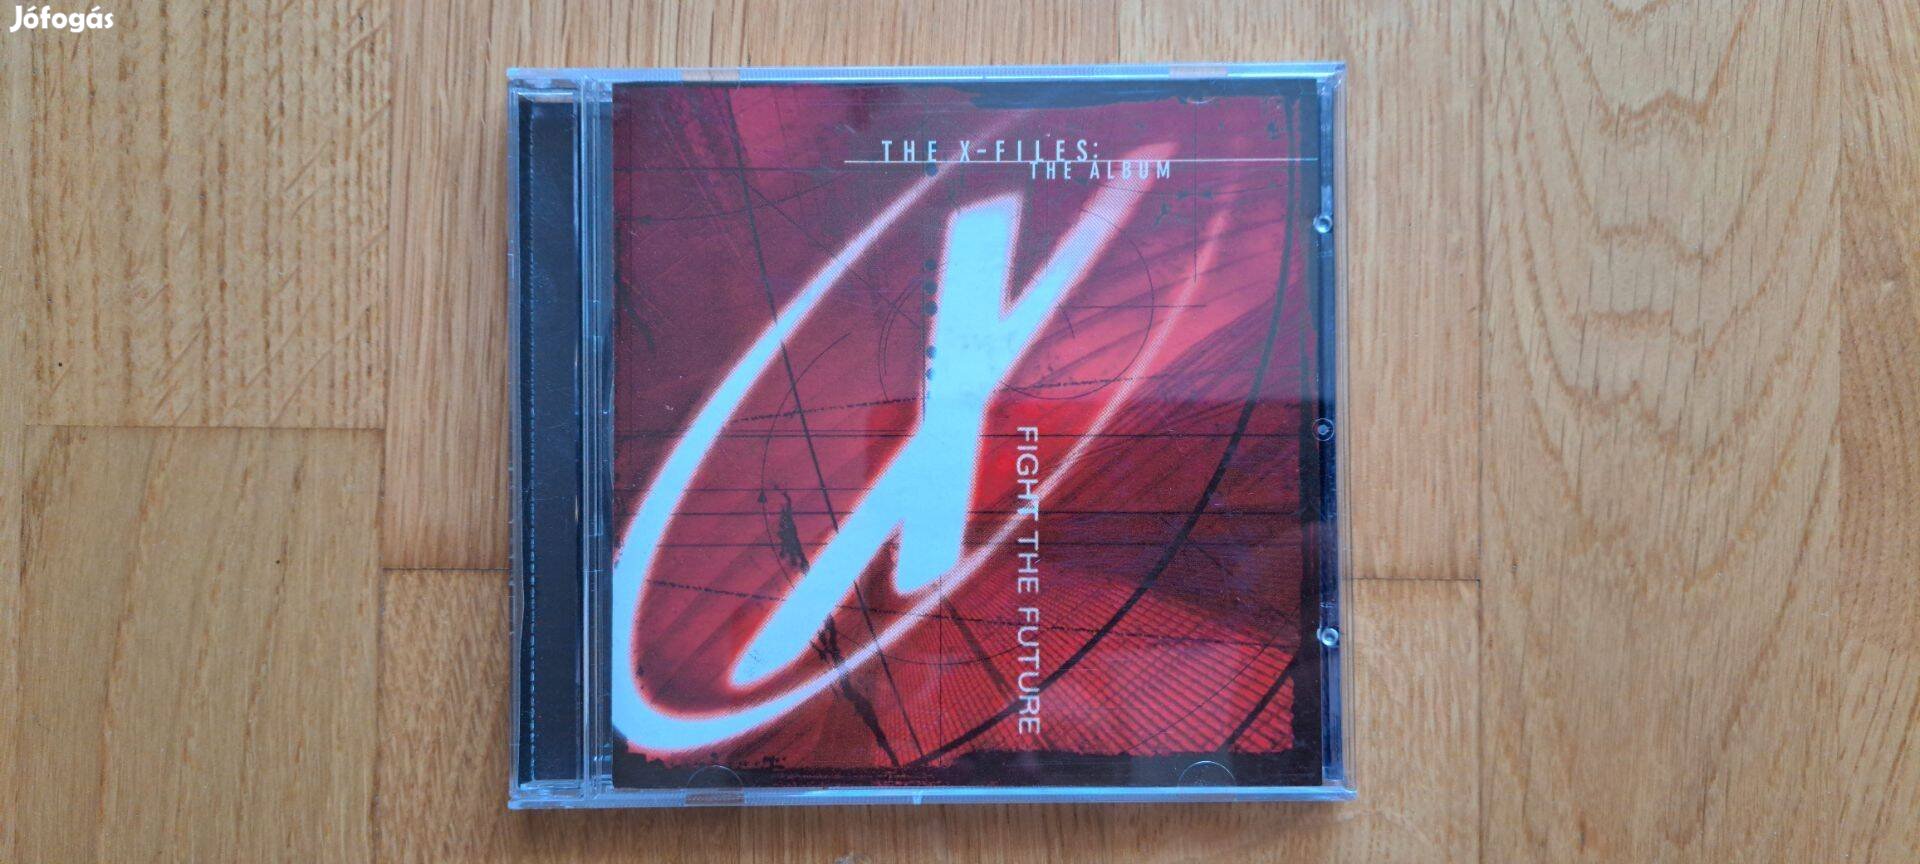 X-Files - The Album CD